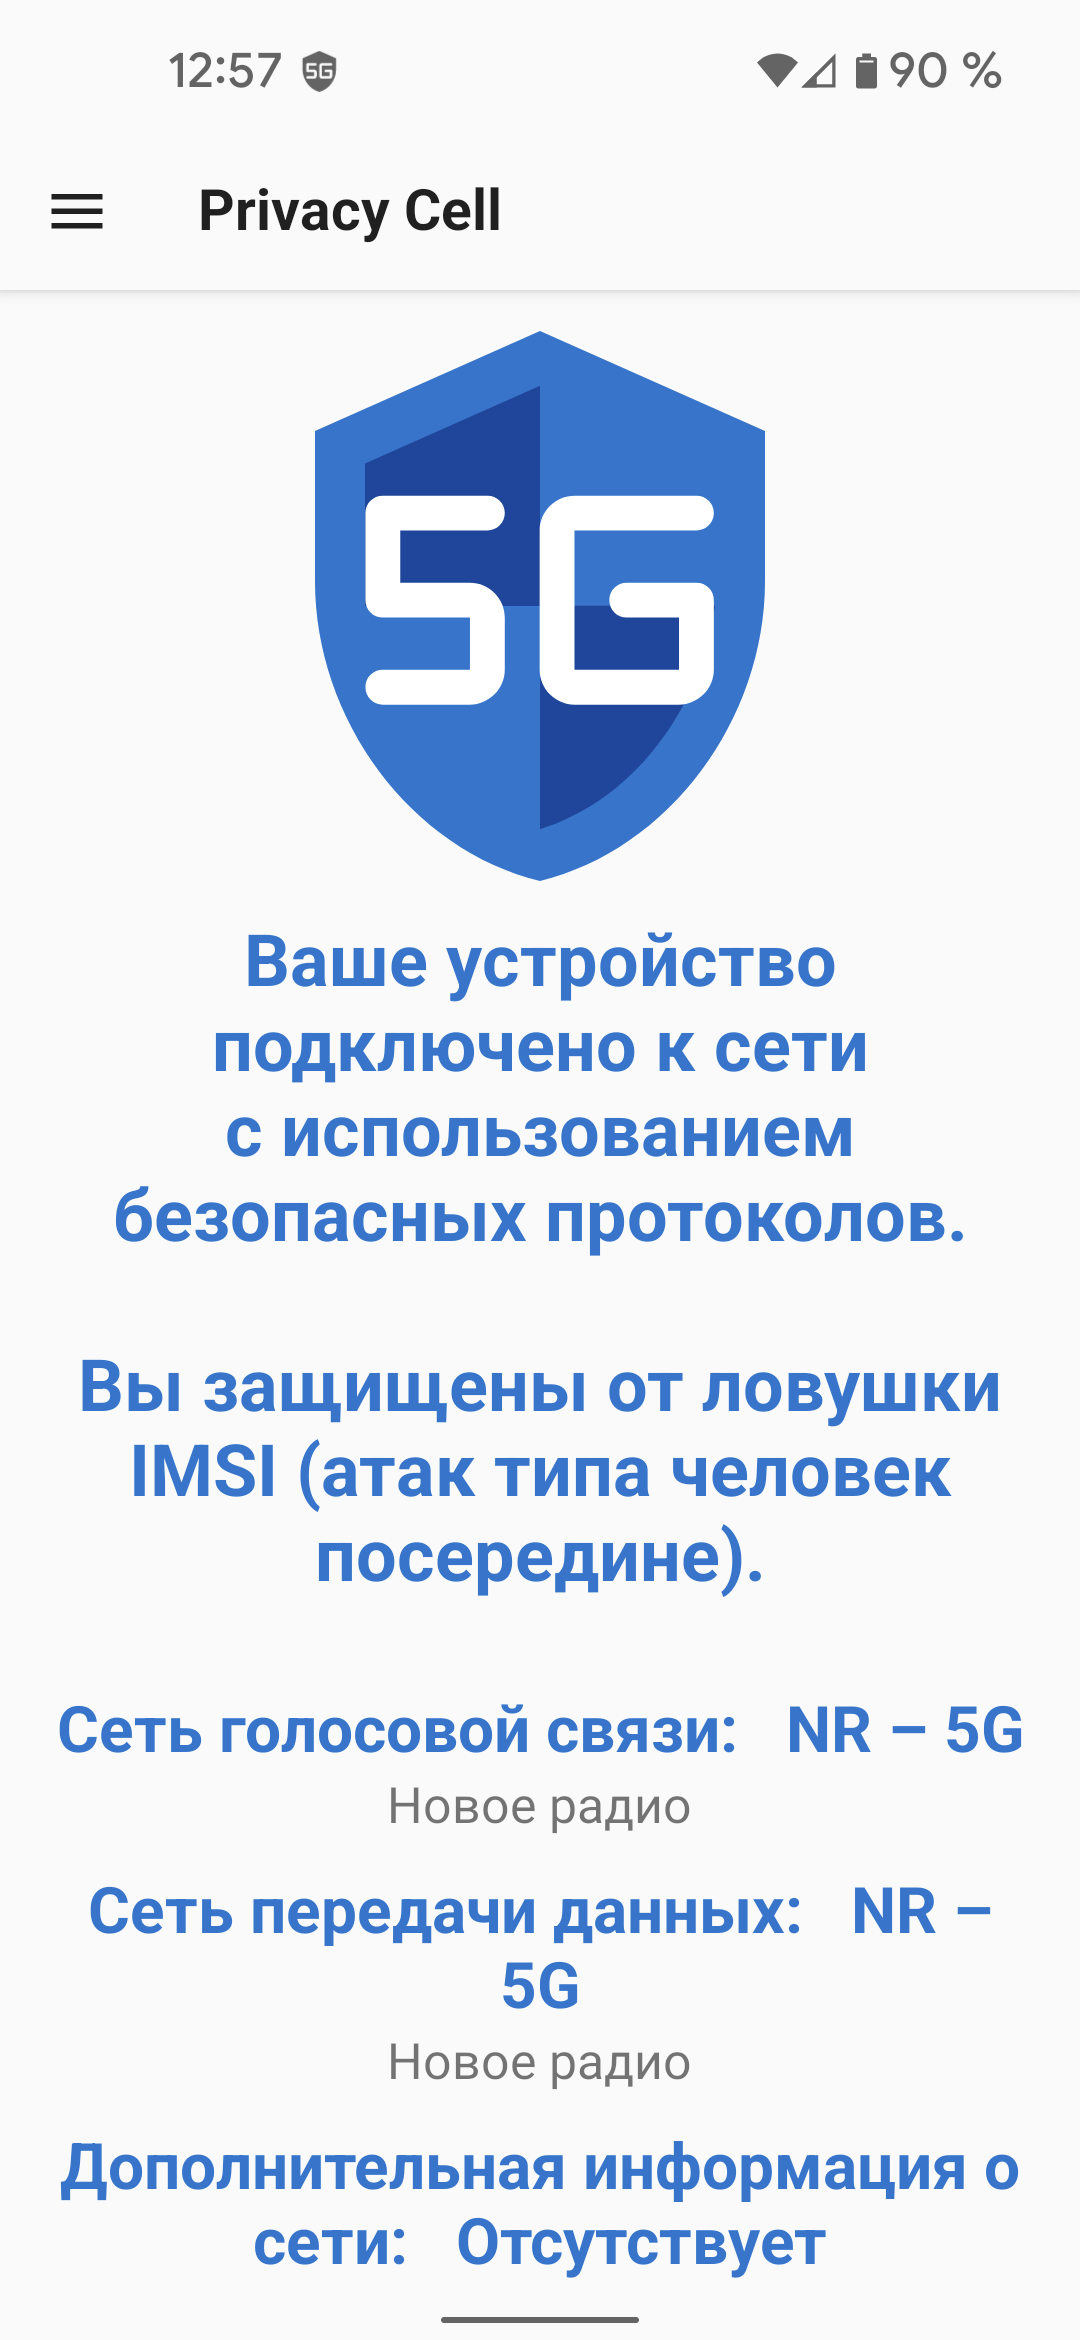 01-SecureNetwork-ru.png